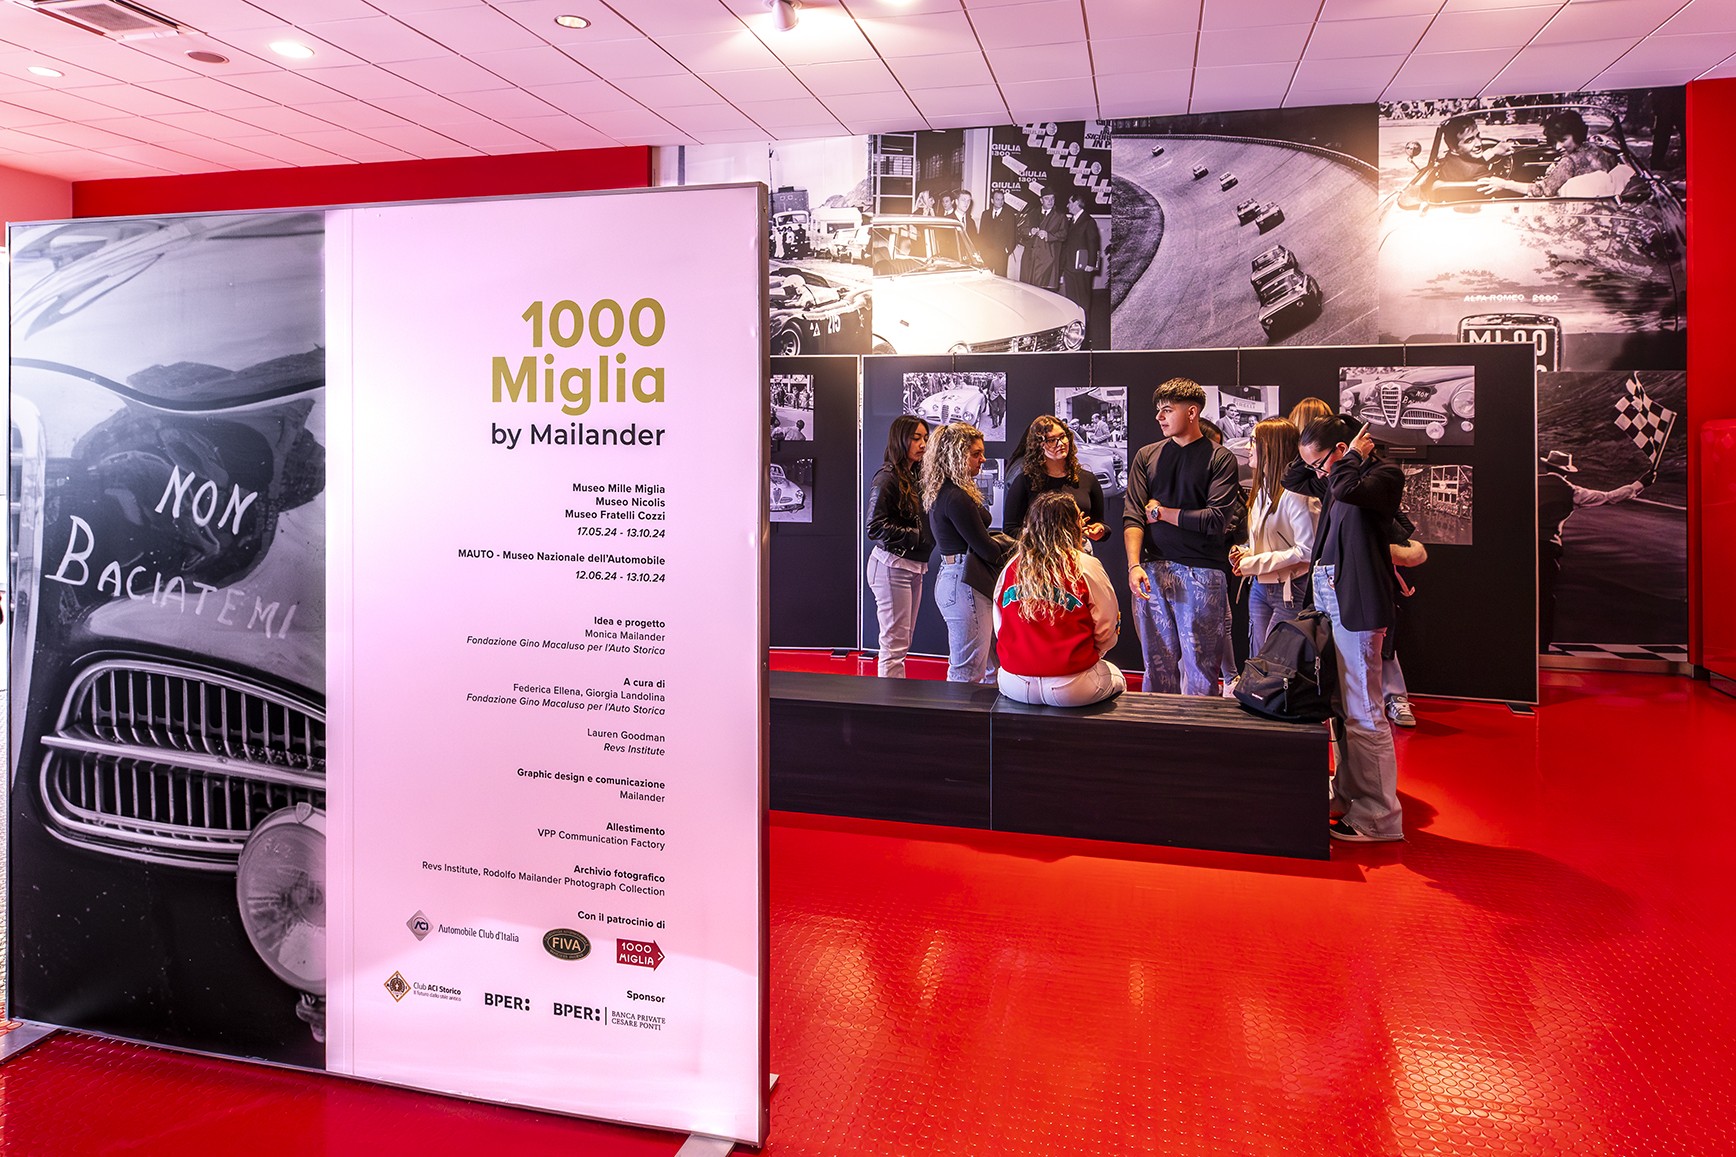 1000 Miglia by Mailander